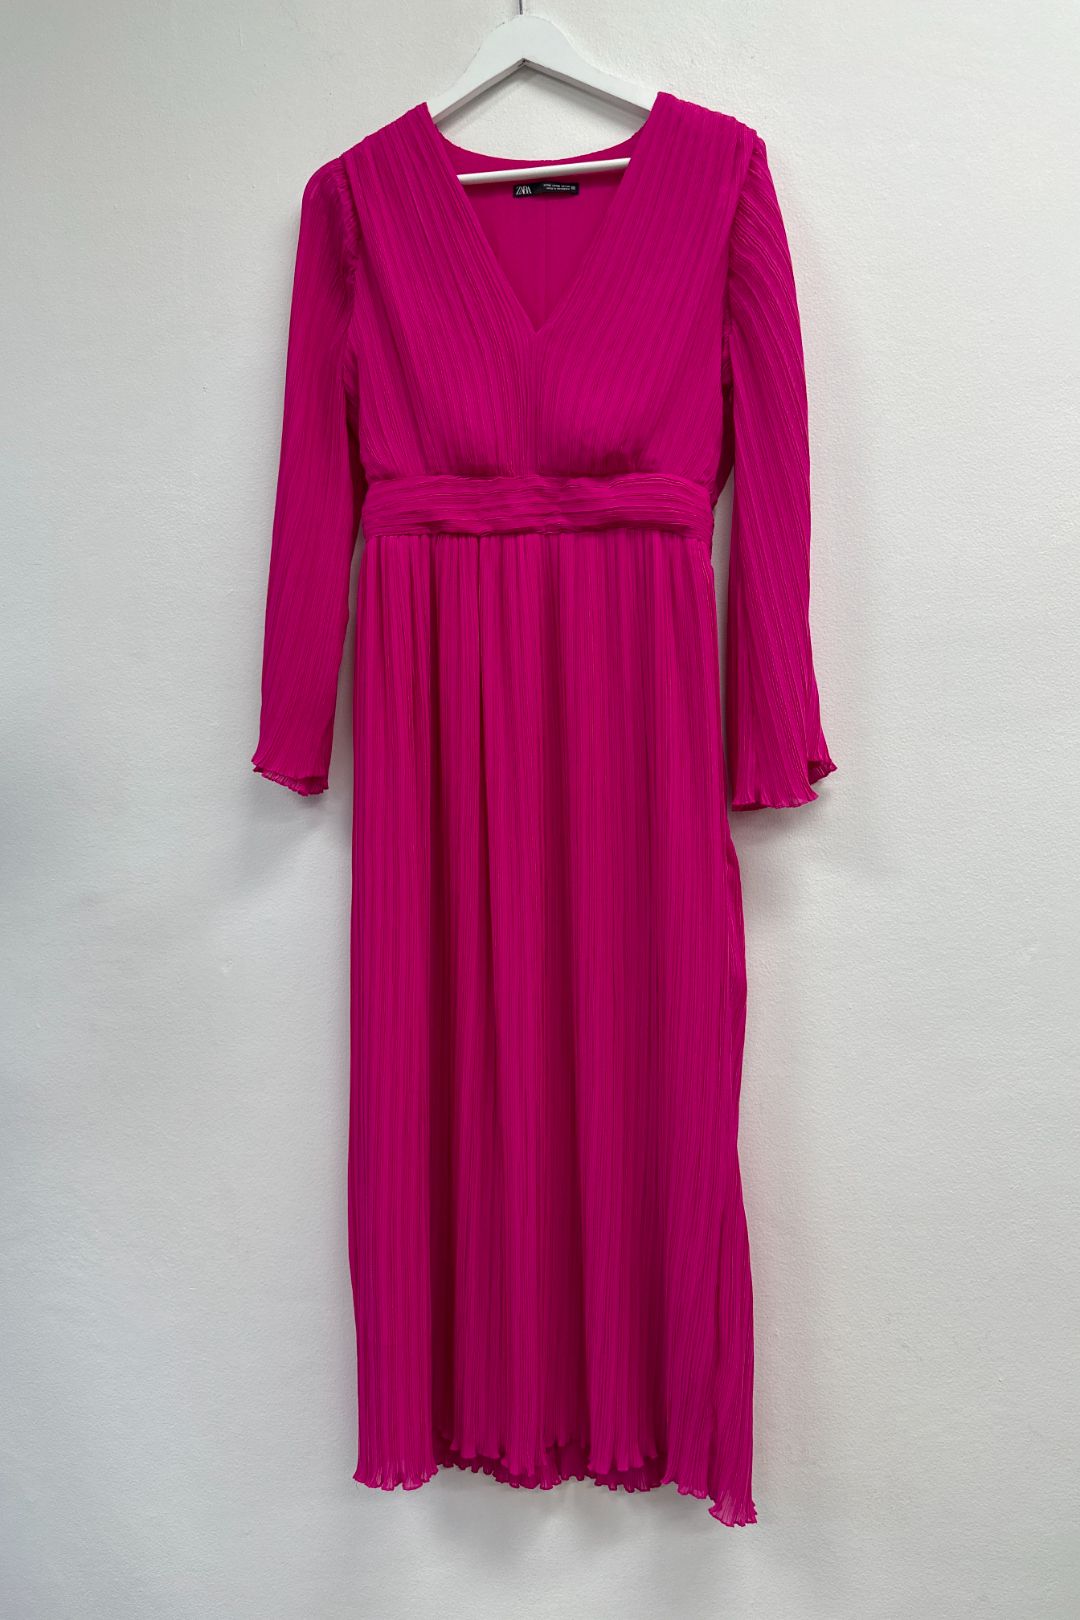 ZARA Fuschia Pink LS Pleated Midi Dress